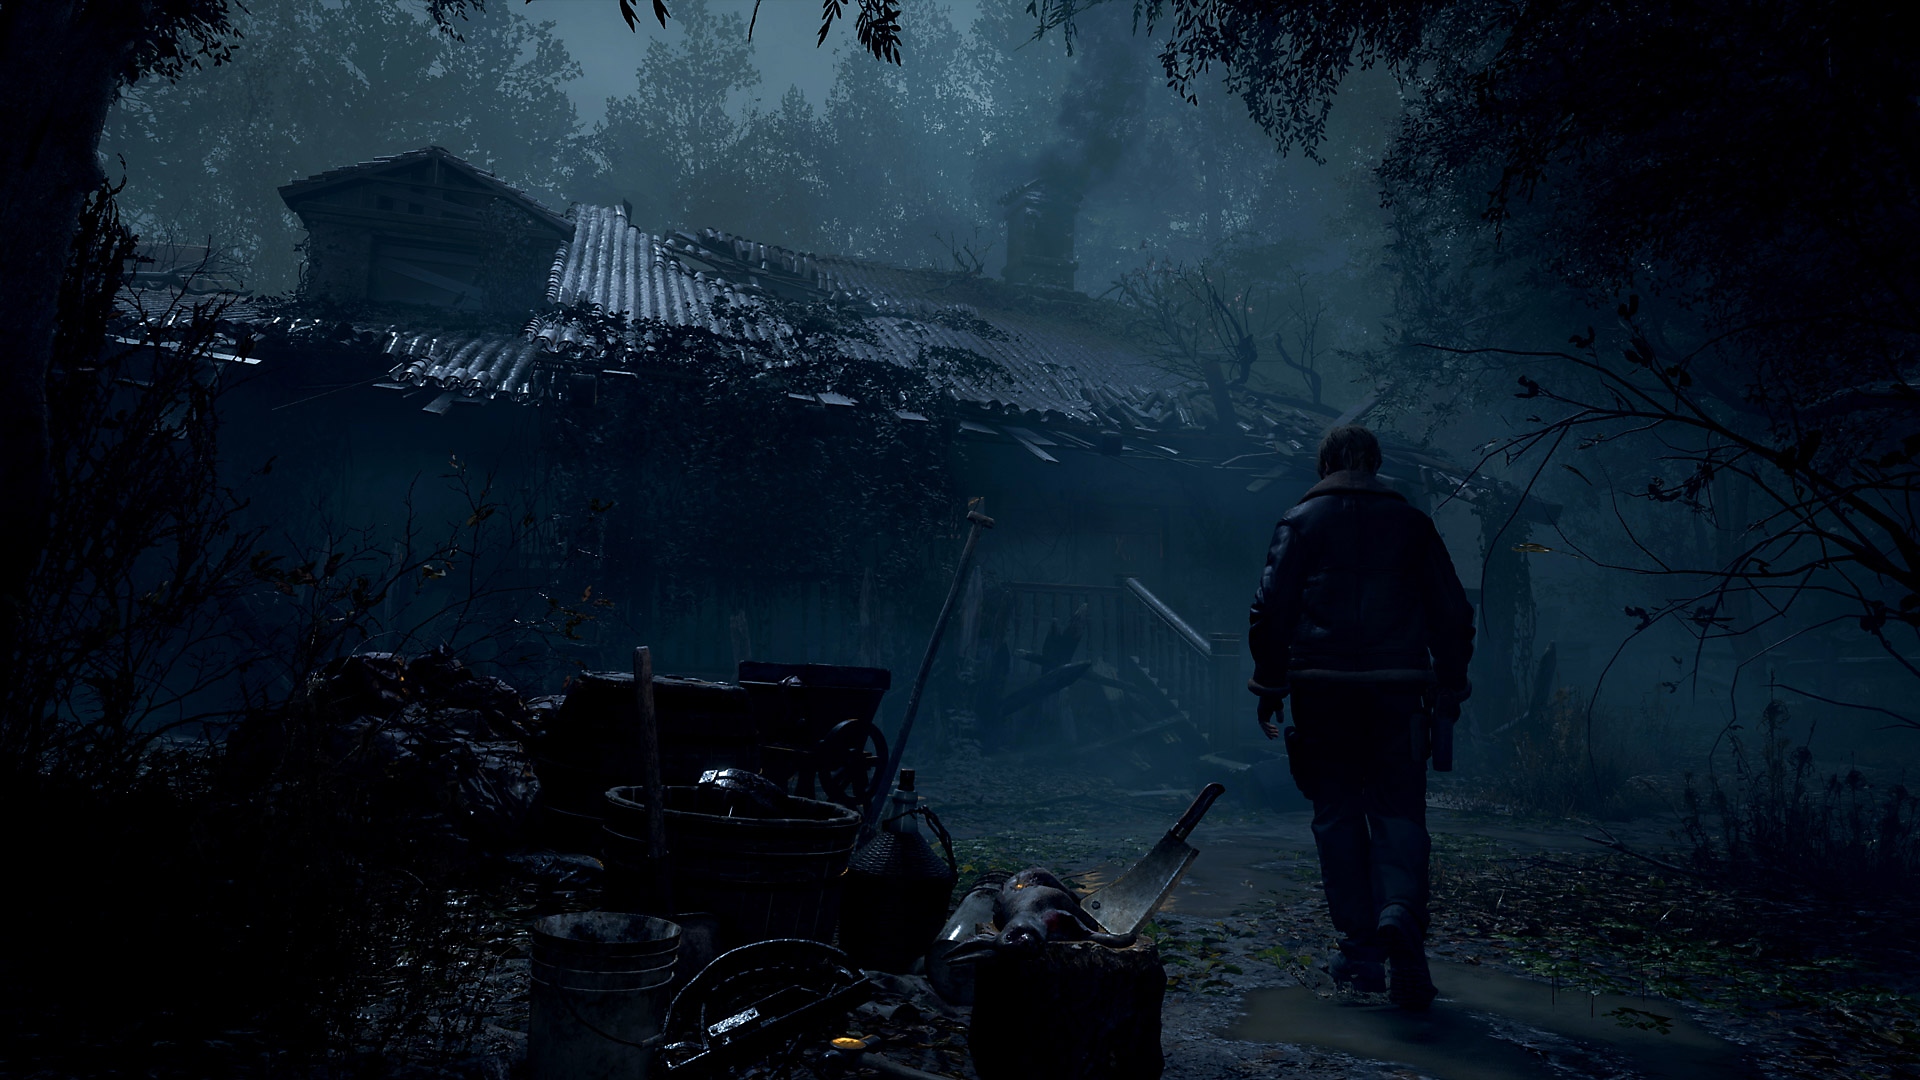 Capture d'écran de Resident Evil 4 - Leon Kennedy s'approchant d'un bâtiment rural délabré